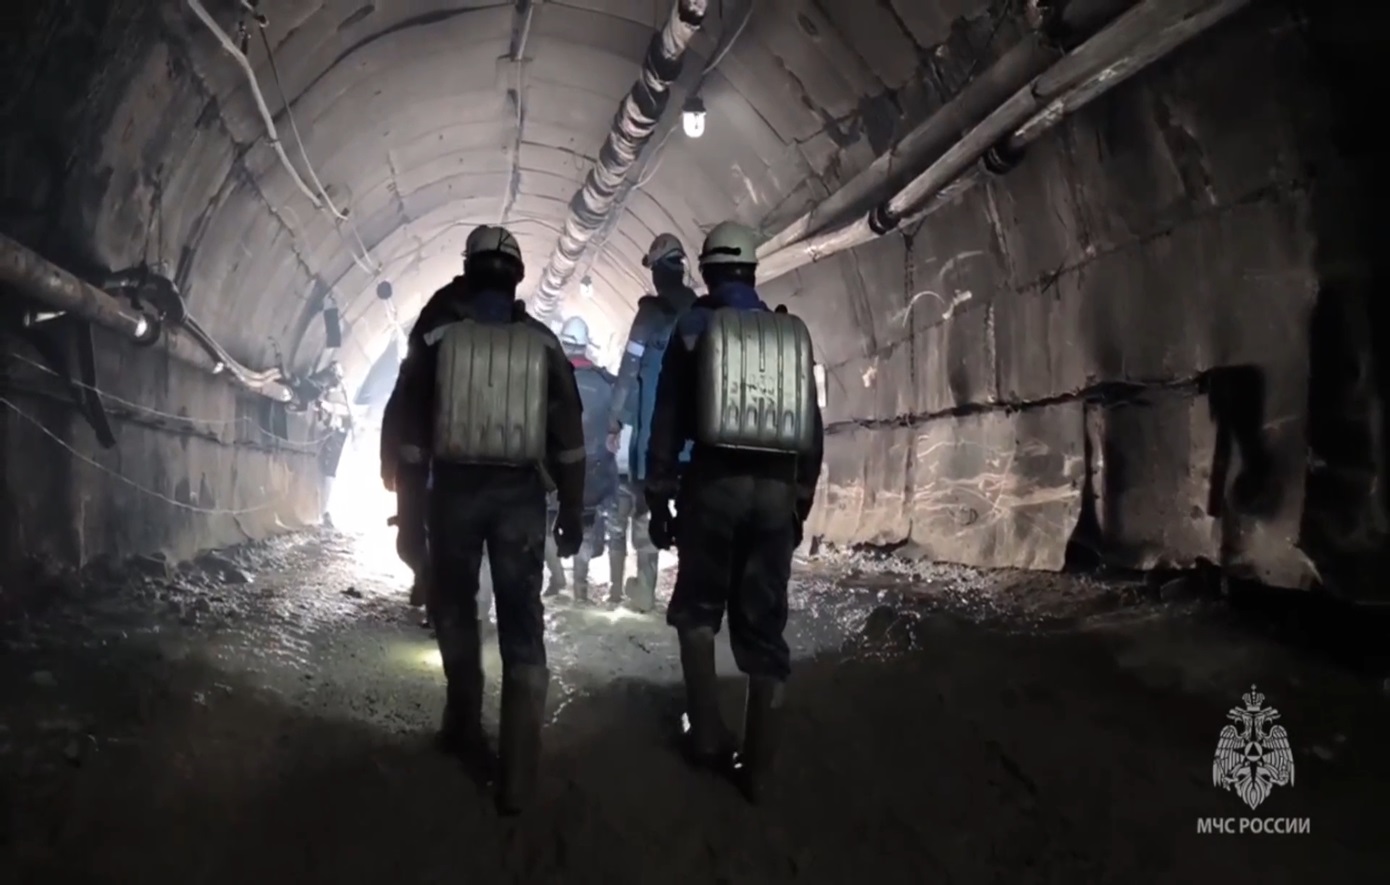 Σταμάτησαν οι προσπάθειες διάσωσης σε χρυσωρυχείο στη Ρωσία υπό τον κίνδυνο νέας κατάρρευσης